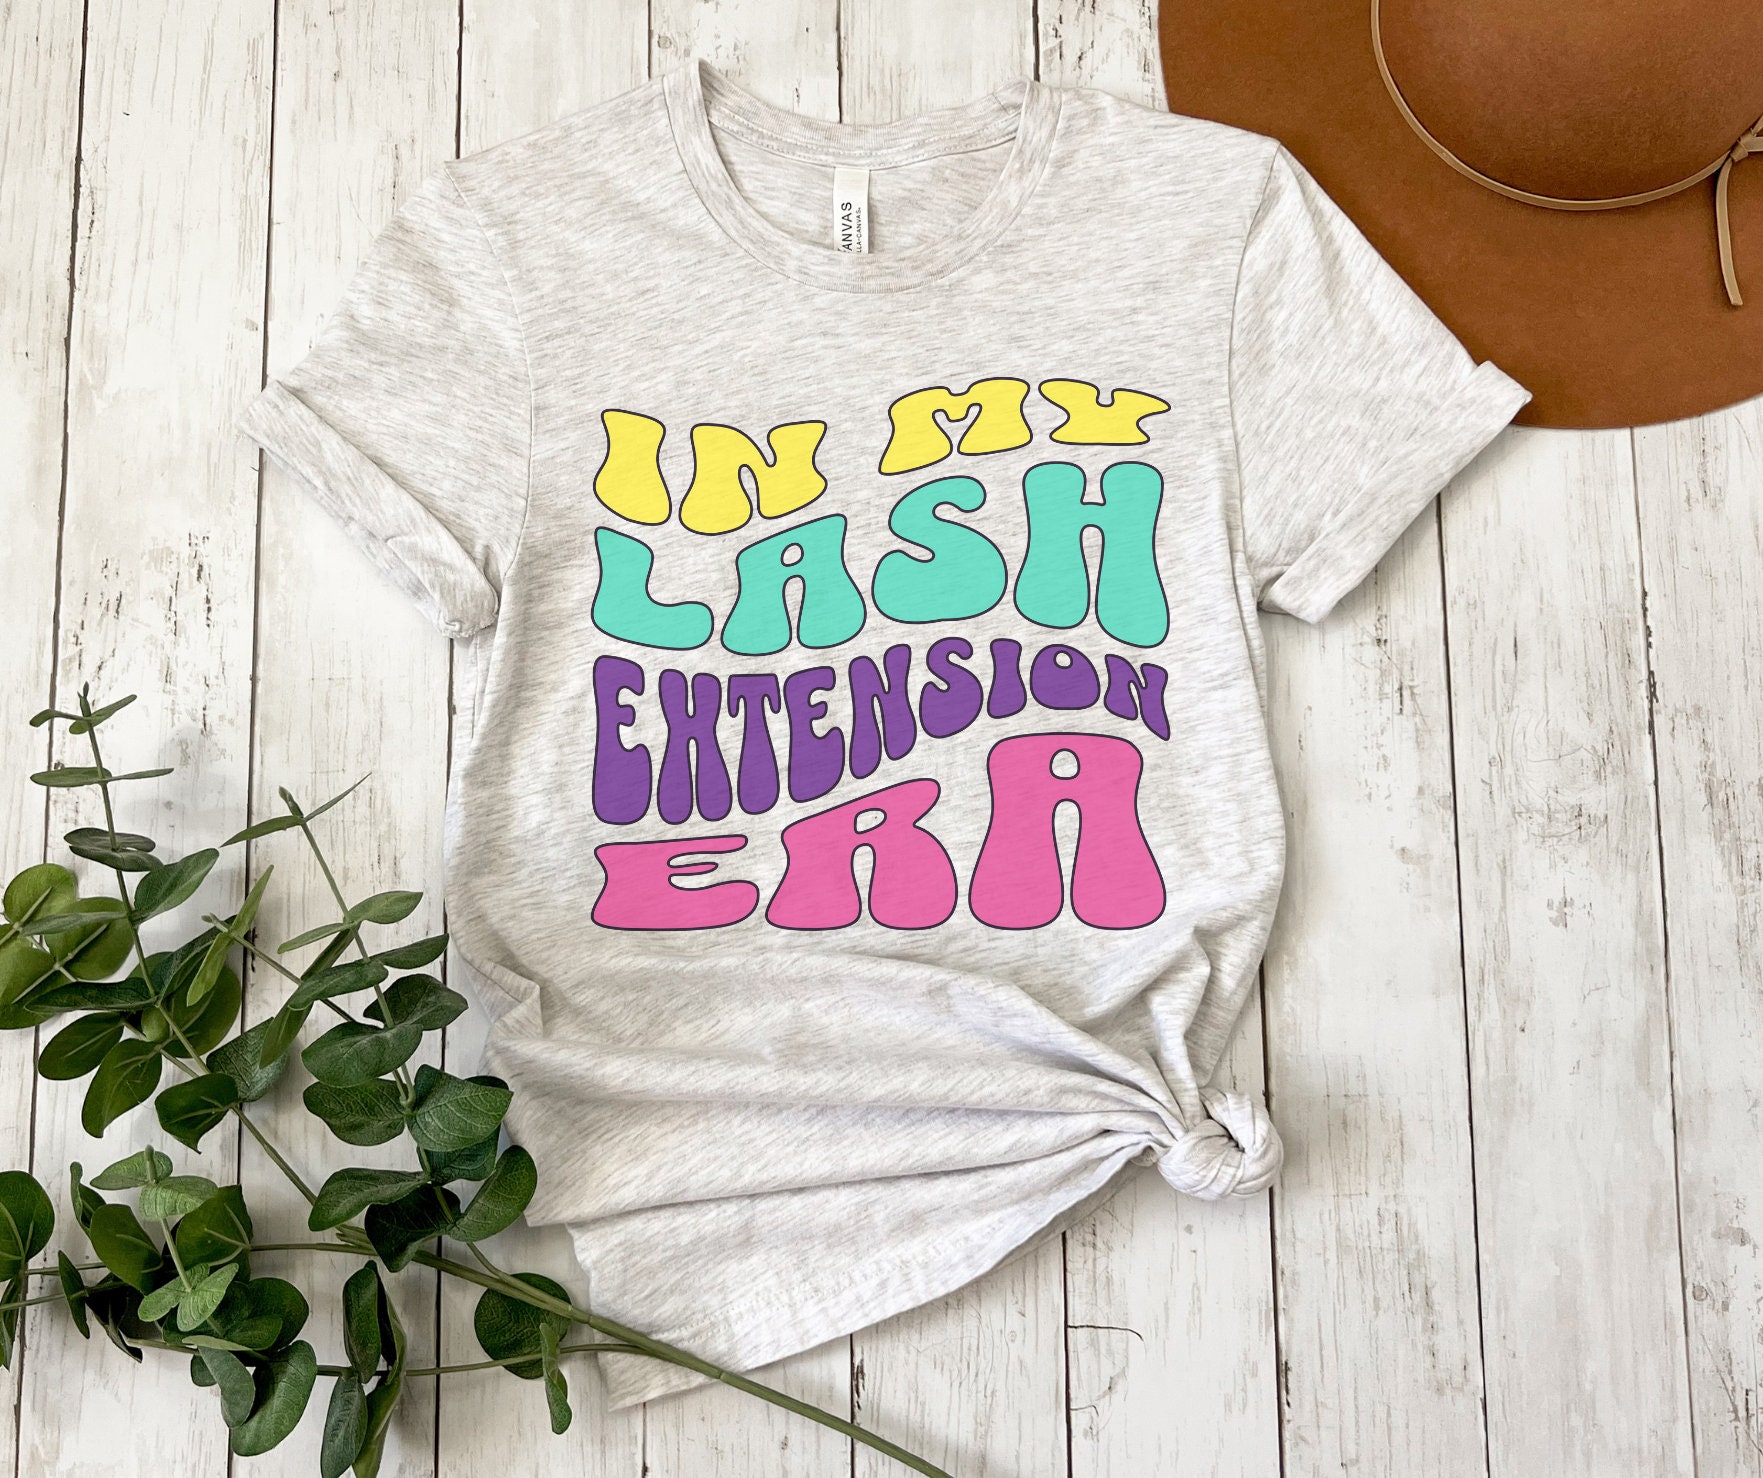 LASH EXTENSION ERA t-shirt femme // chemise pour la technologie des cils //  t-shirt cils // pour technicienne des cils // cadeau pour elle // chemise  femme // cils -  France